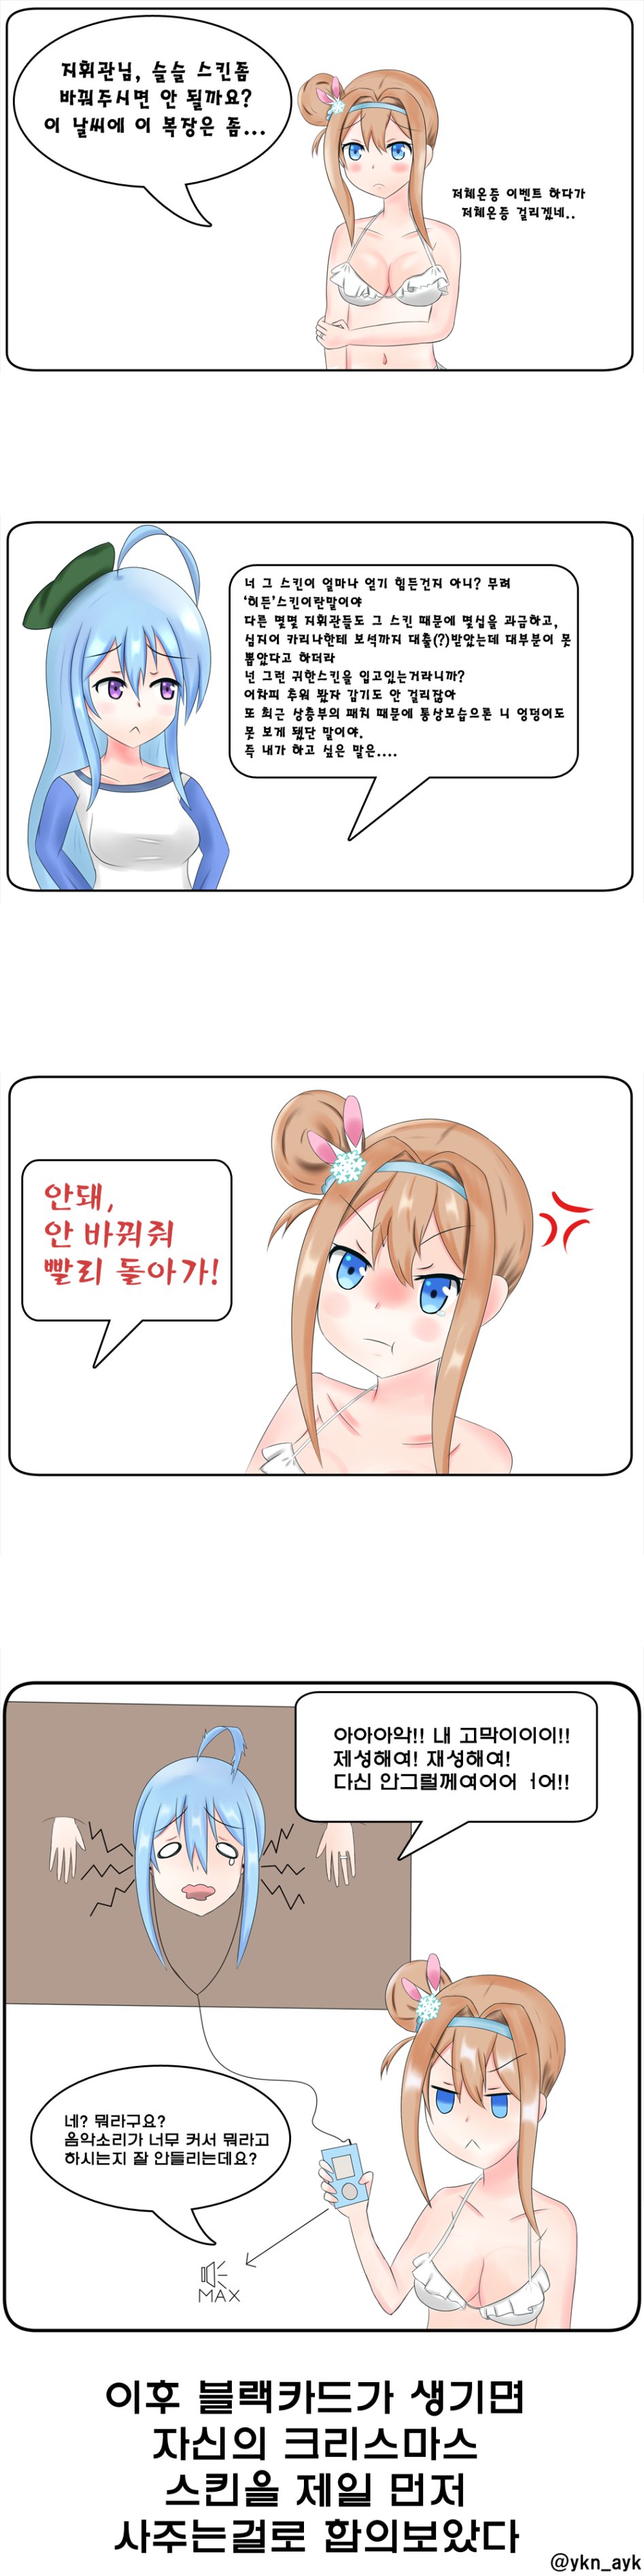 수오미가 스킨 바꿔달라는 만화(대사).png